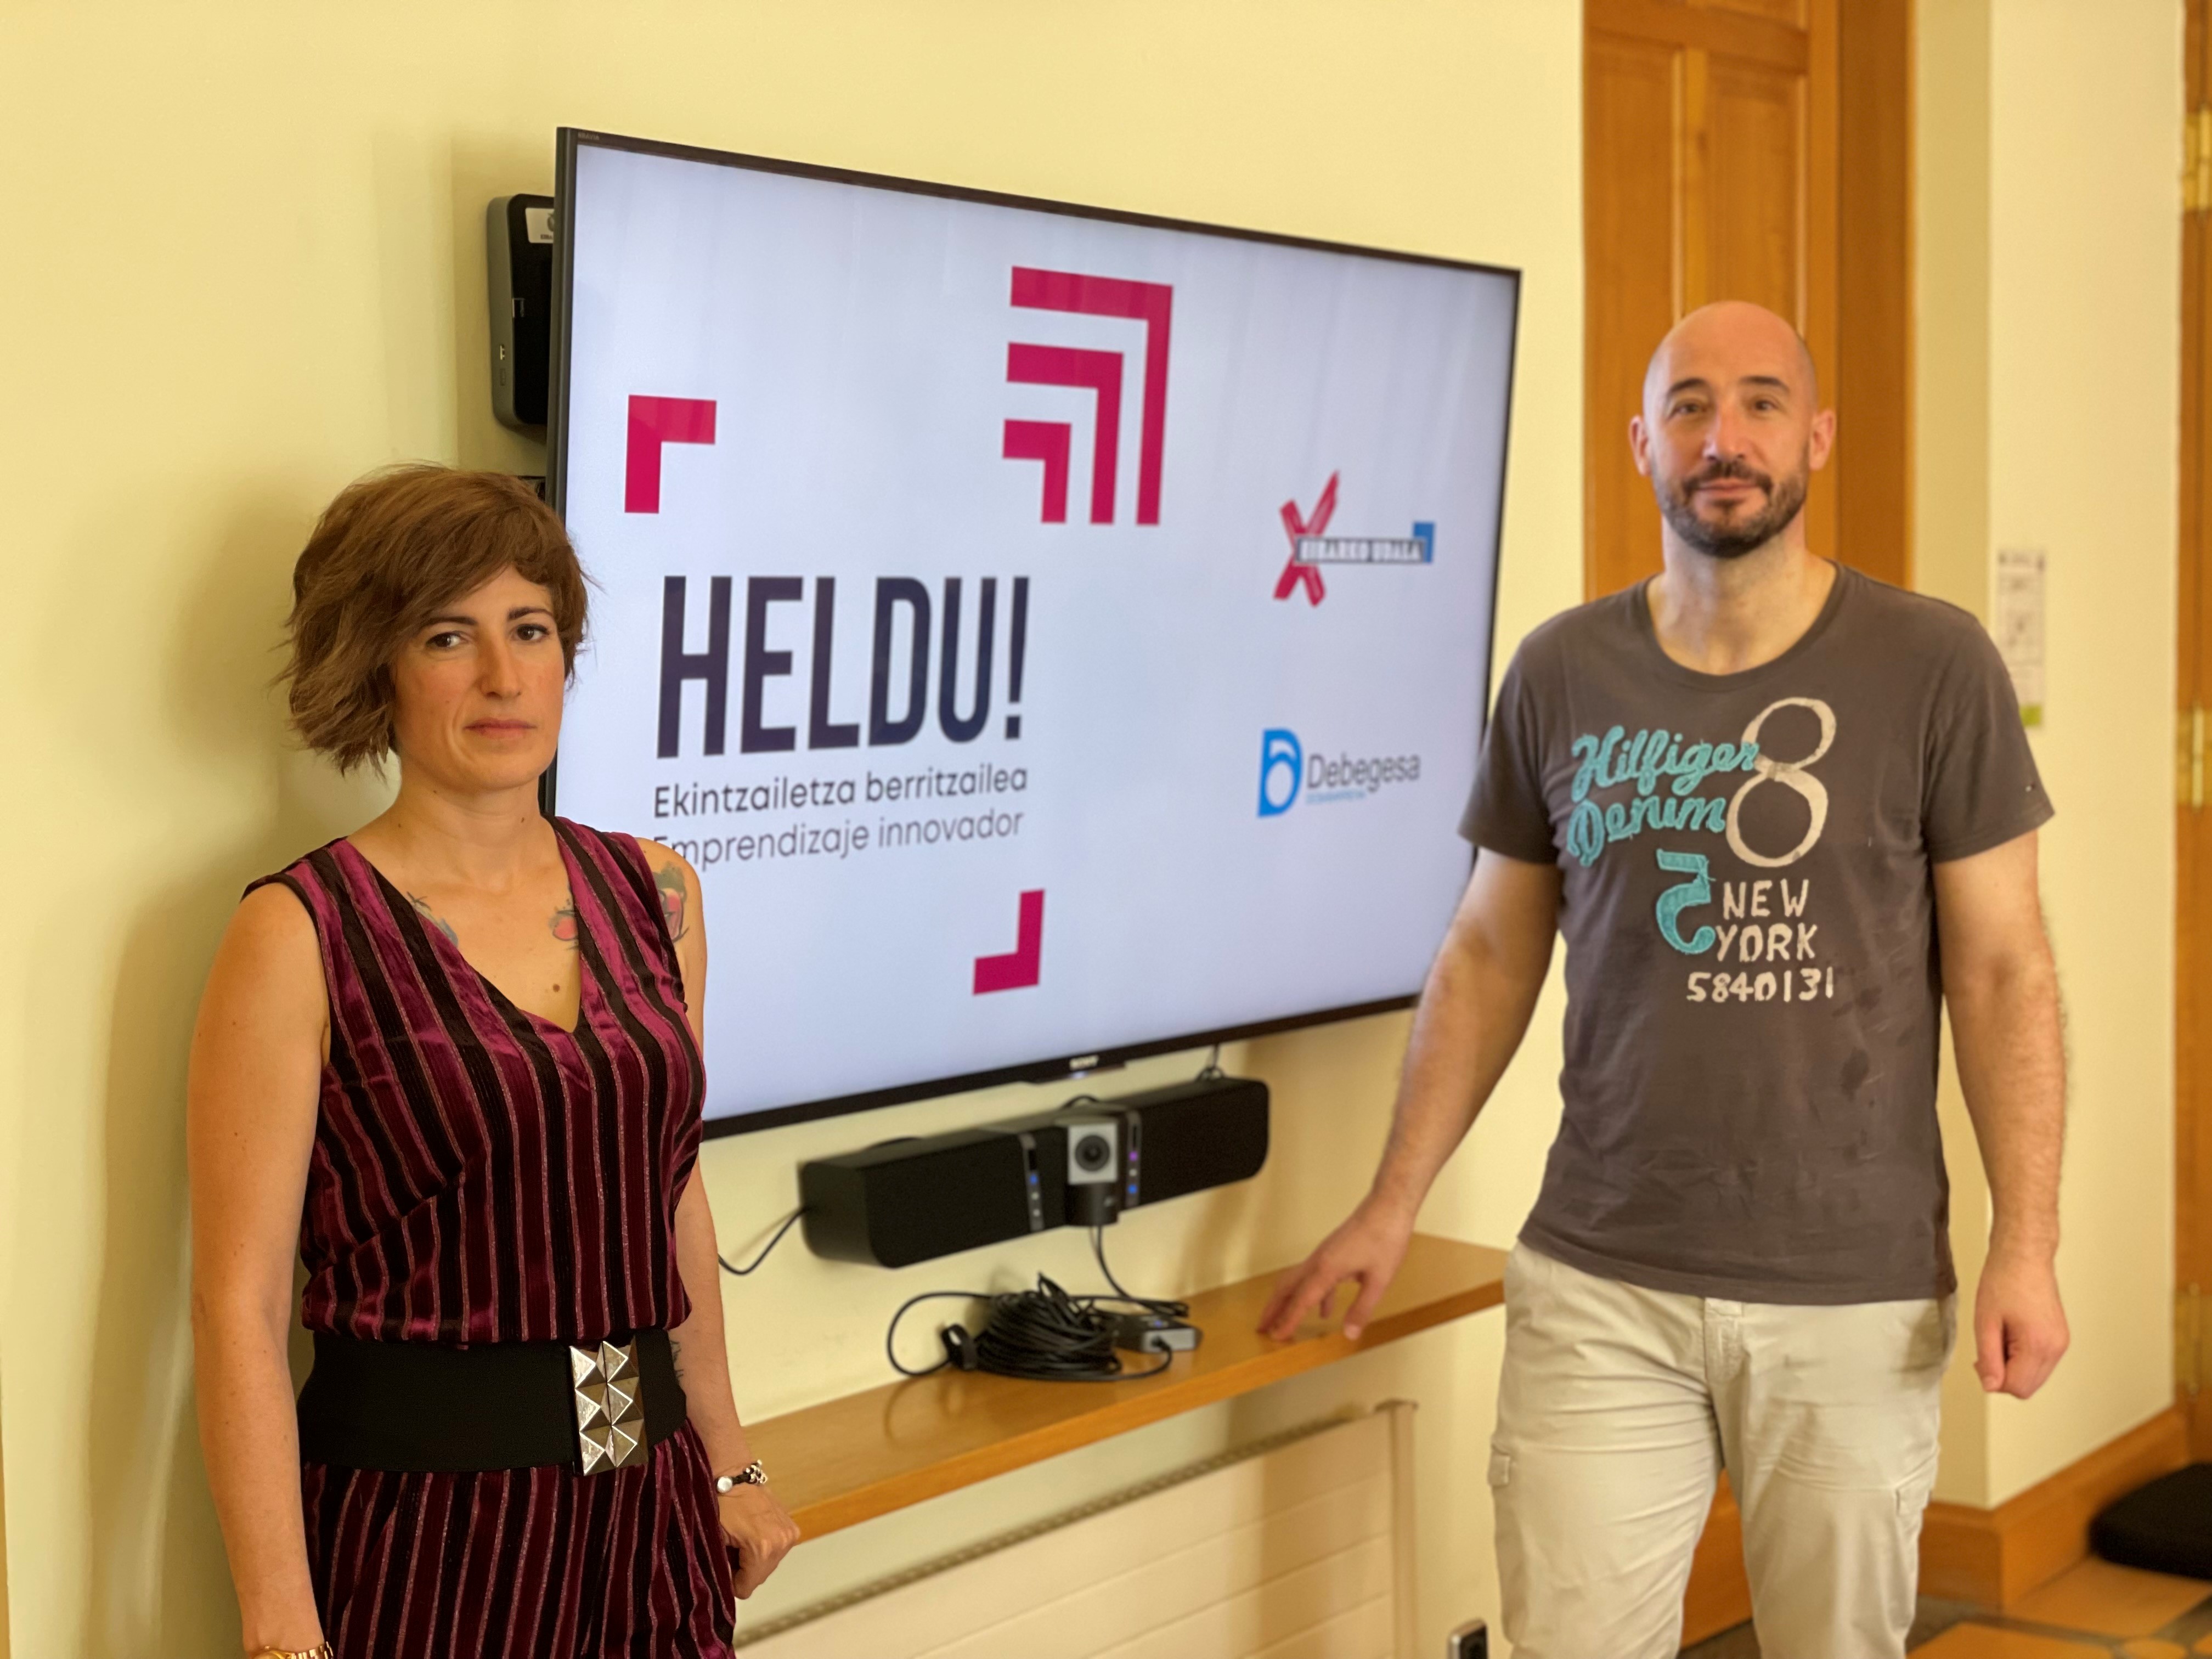 El Ayuntamiento impulsa el programa Heldu!, que tiene como objetivo fomentar el emprendimiento en Eibar